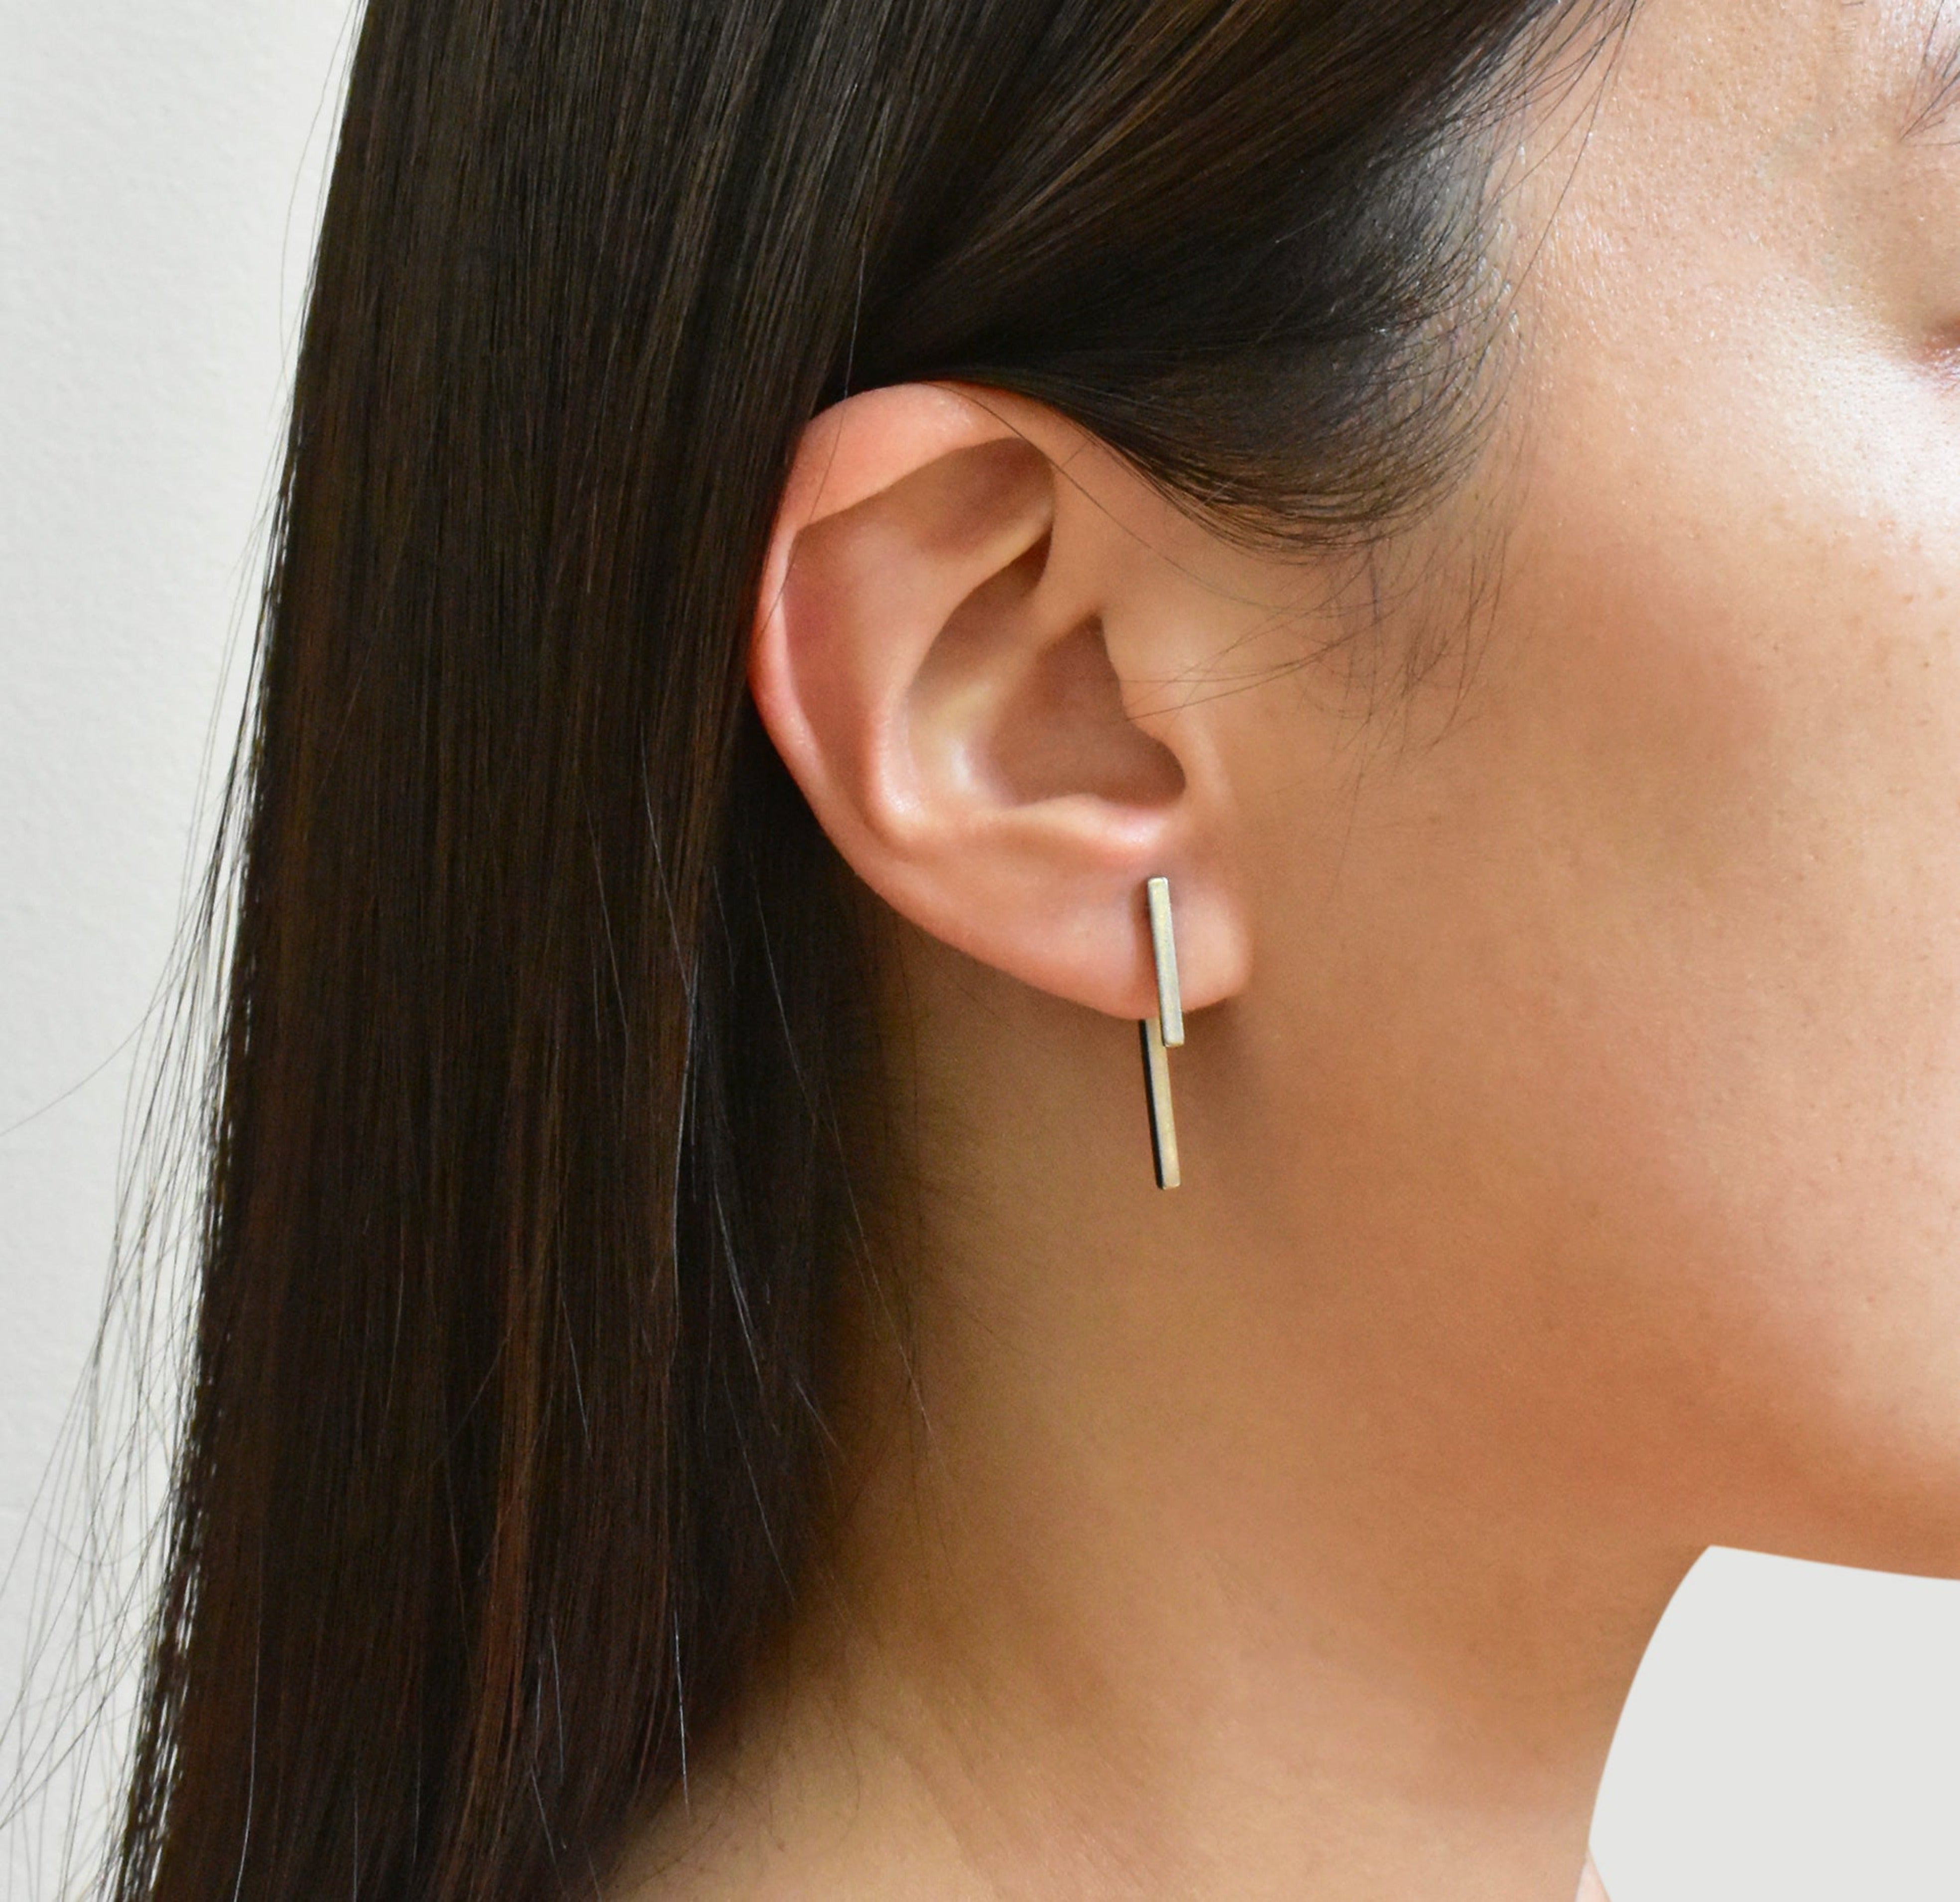 silver bar earrings waterproof jewelry